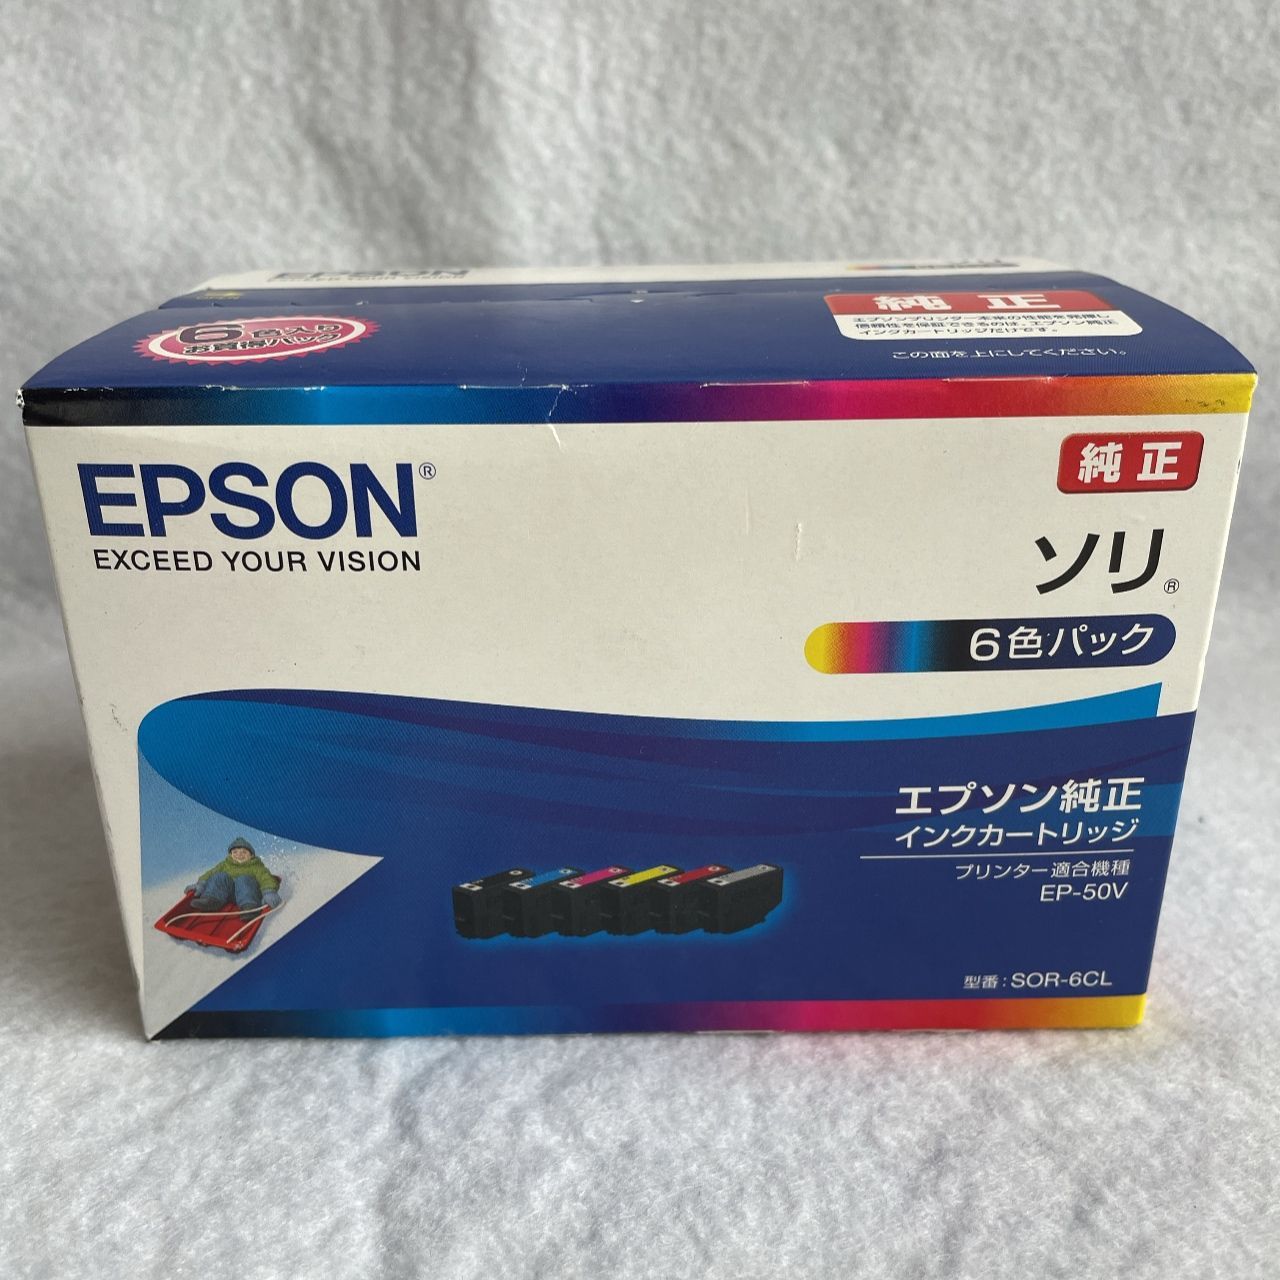 価格交渉OK送料無料 まとめ エプソン インクカートリッジ ソリ6色パック SOR-6CL 1箱 6個:各色1個